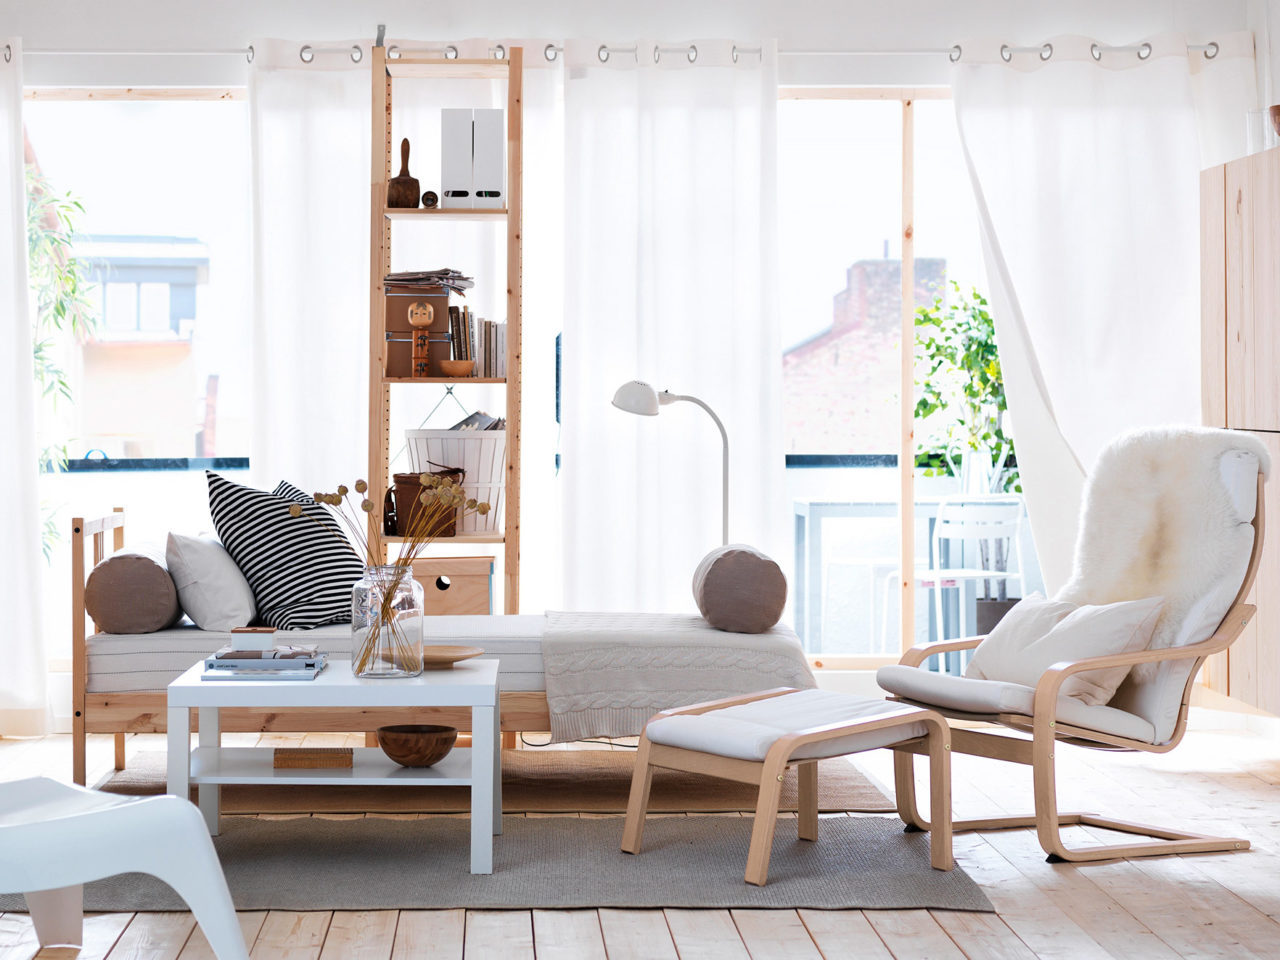 Habitación luminosa con luz reflejada en el suelo, cama y estantería en madera clara, y sillón con reposapiés modelo POÄNG.